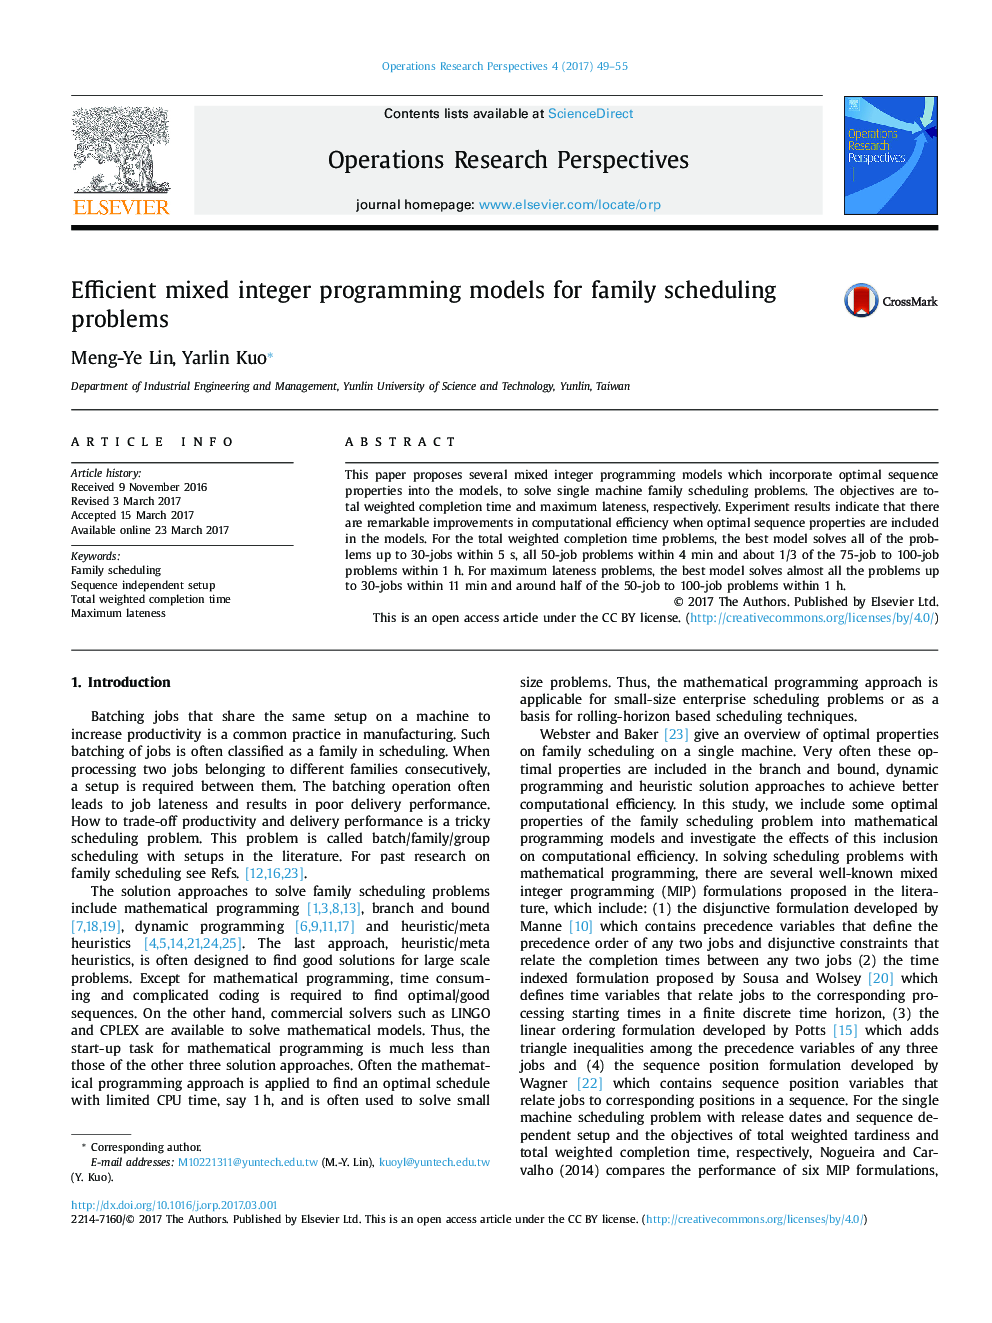 مدل های برنامه ریزی عدد صحیح کارآمد برای مشکلات برنامه ریزی خانوادگی 